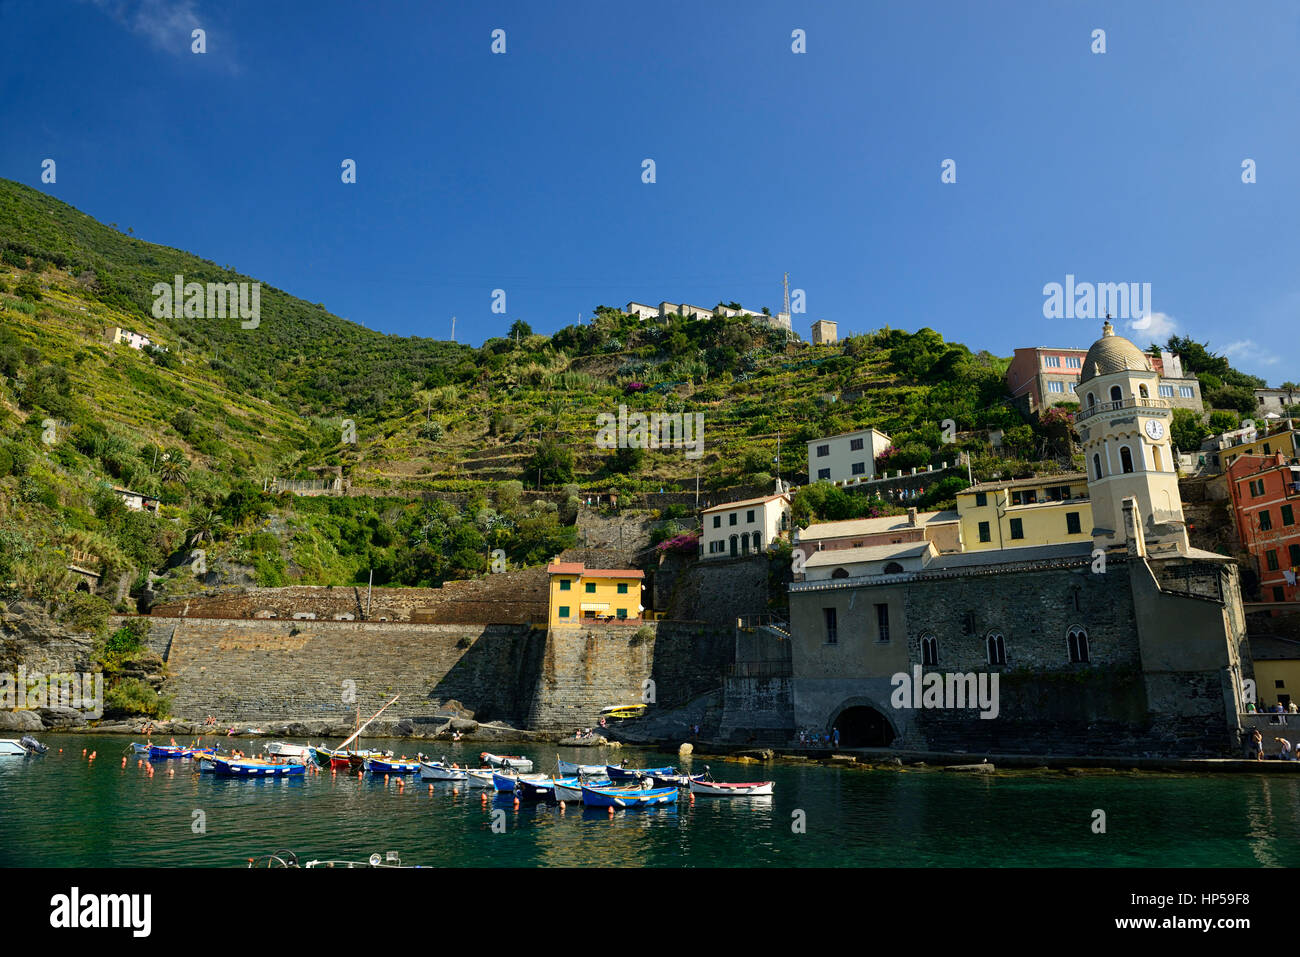 Vernazza, Cinque Terre, Coast, Coastline, Village, Villages, cliff, cliffs, clifftop, colourful, colorful, houses, shops, buildings, premises, tourist Stock Photo